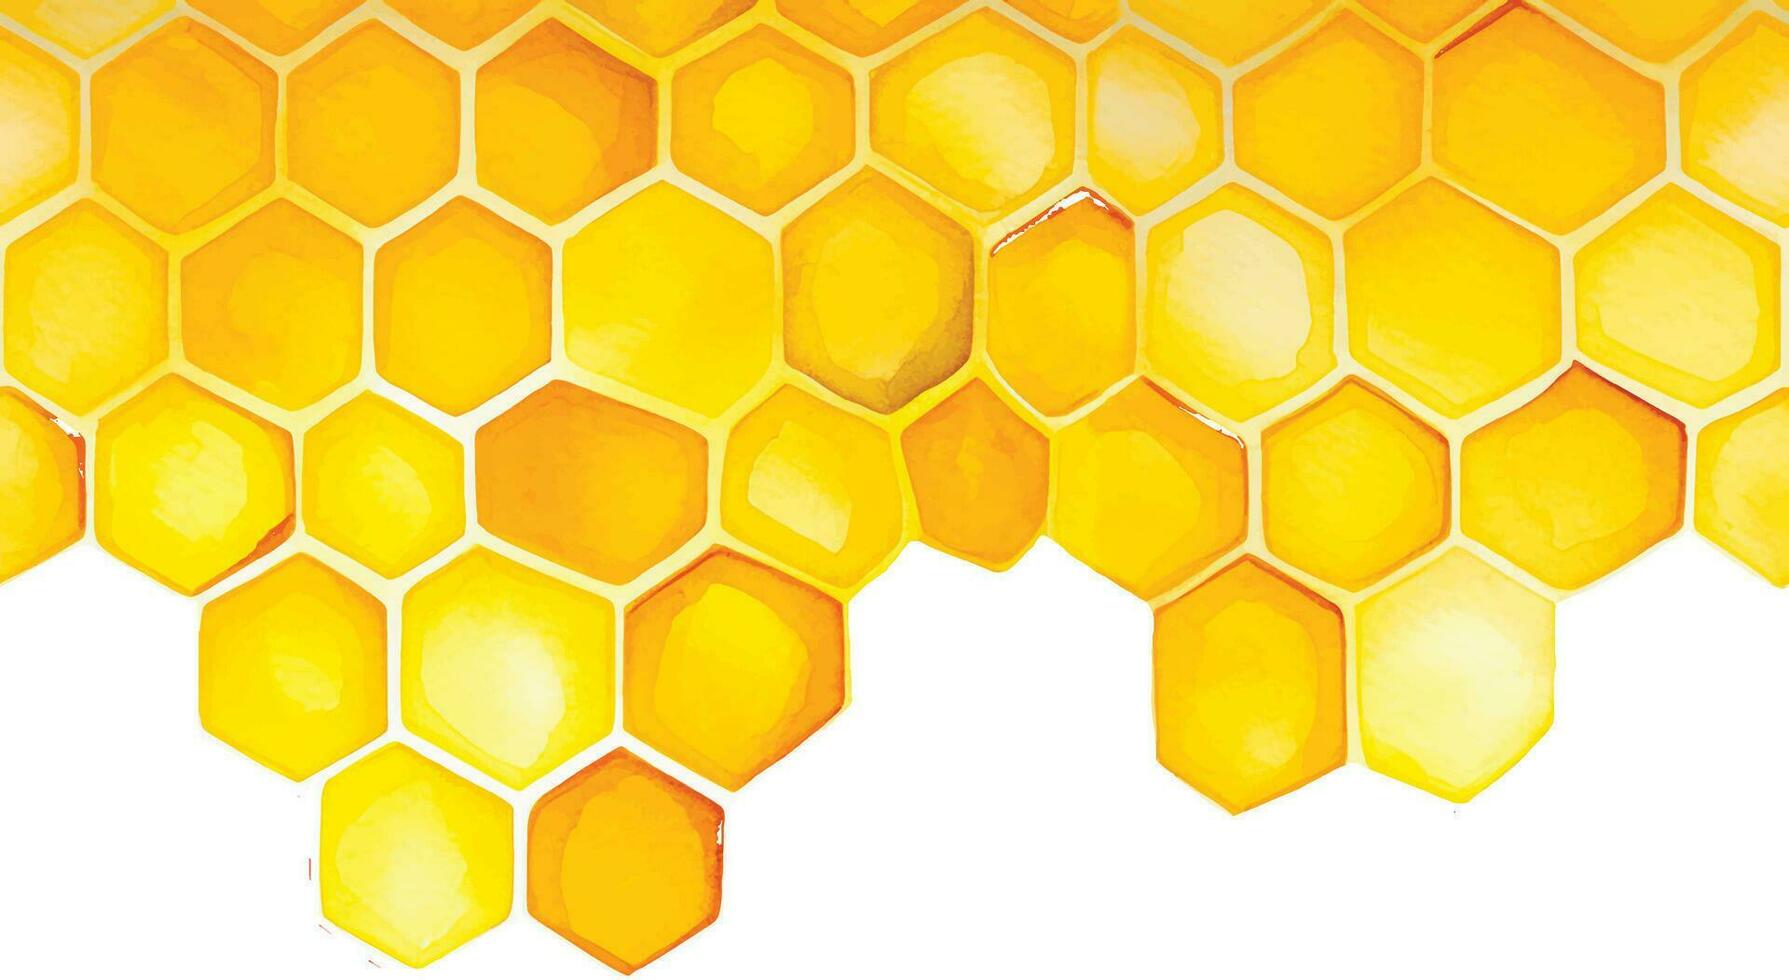 fond transparent, bordure en nid d'abeille. dessin à la main aquarelle en nid d'abeille jaune. isolé sur fond blanc. modèle de conception, bannière, place pour une inscription. mignon dessin agriculture, abeille vecteur